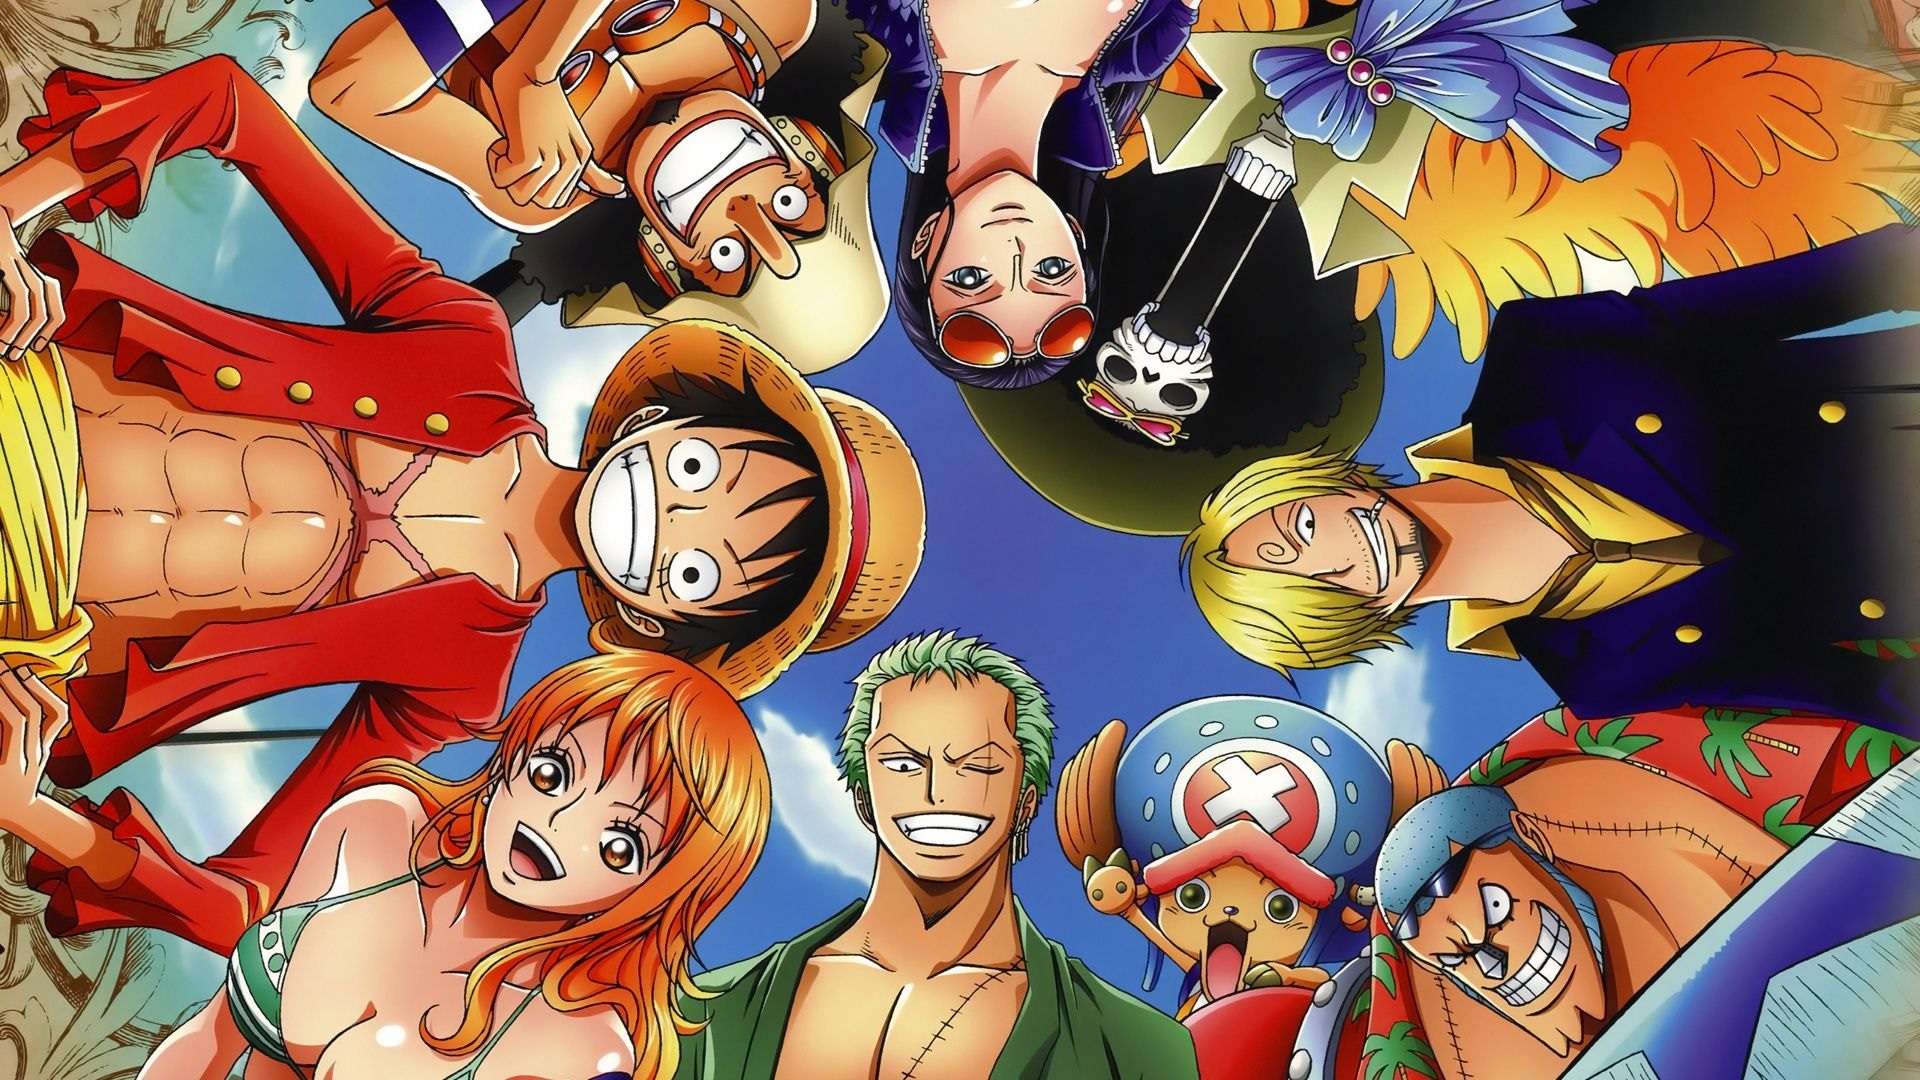 Bạn đang tìm kiếm những bức ảnh One Piece đẹp nhất? Ảnh One Piece 4K là lựa chọn hoàn hảo dành cho bạn. Ảnh chất lượng cao cùng với độ phân giải 4K sẽ khiến hình ảnh của nhân vật được tái hiện tốt nhất có thể.